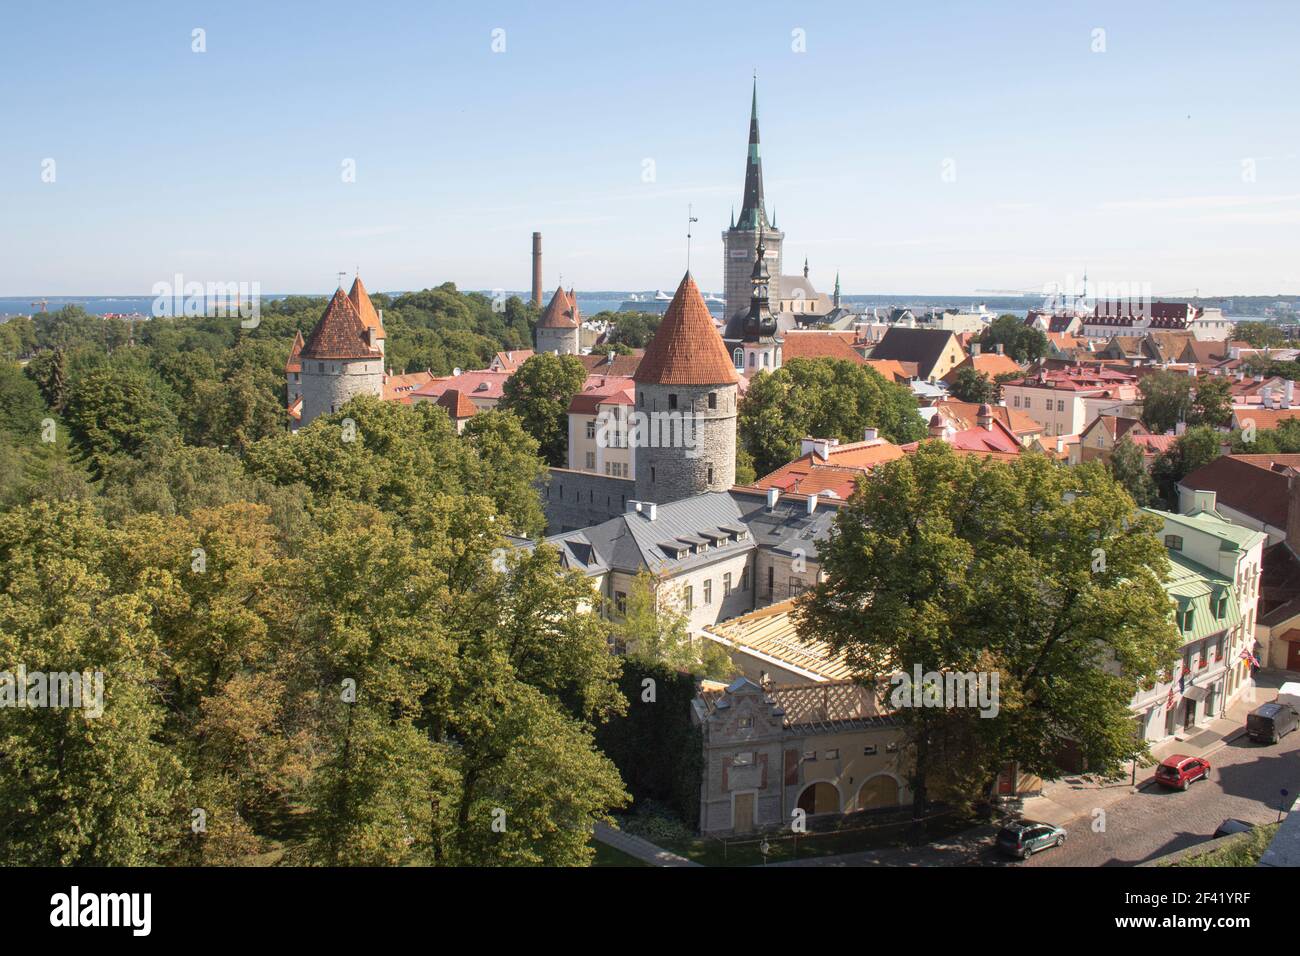 Tallinn old town, Estonia Stock Photo